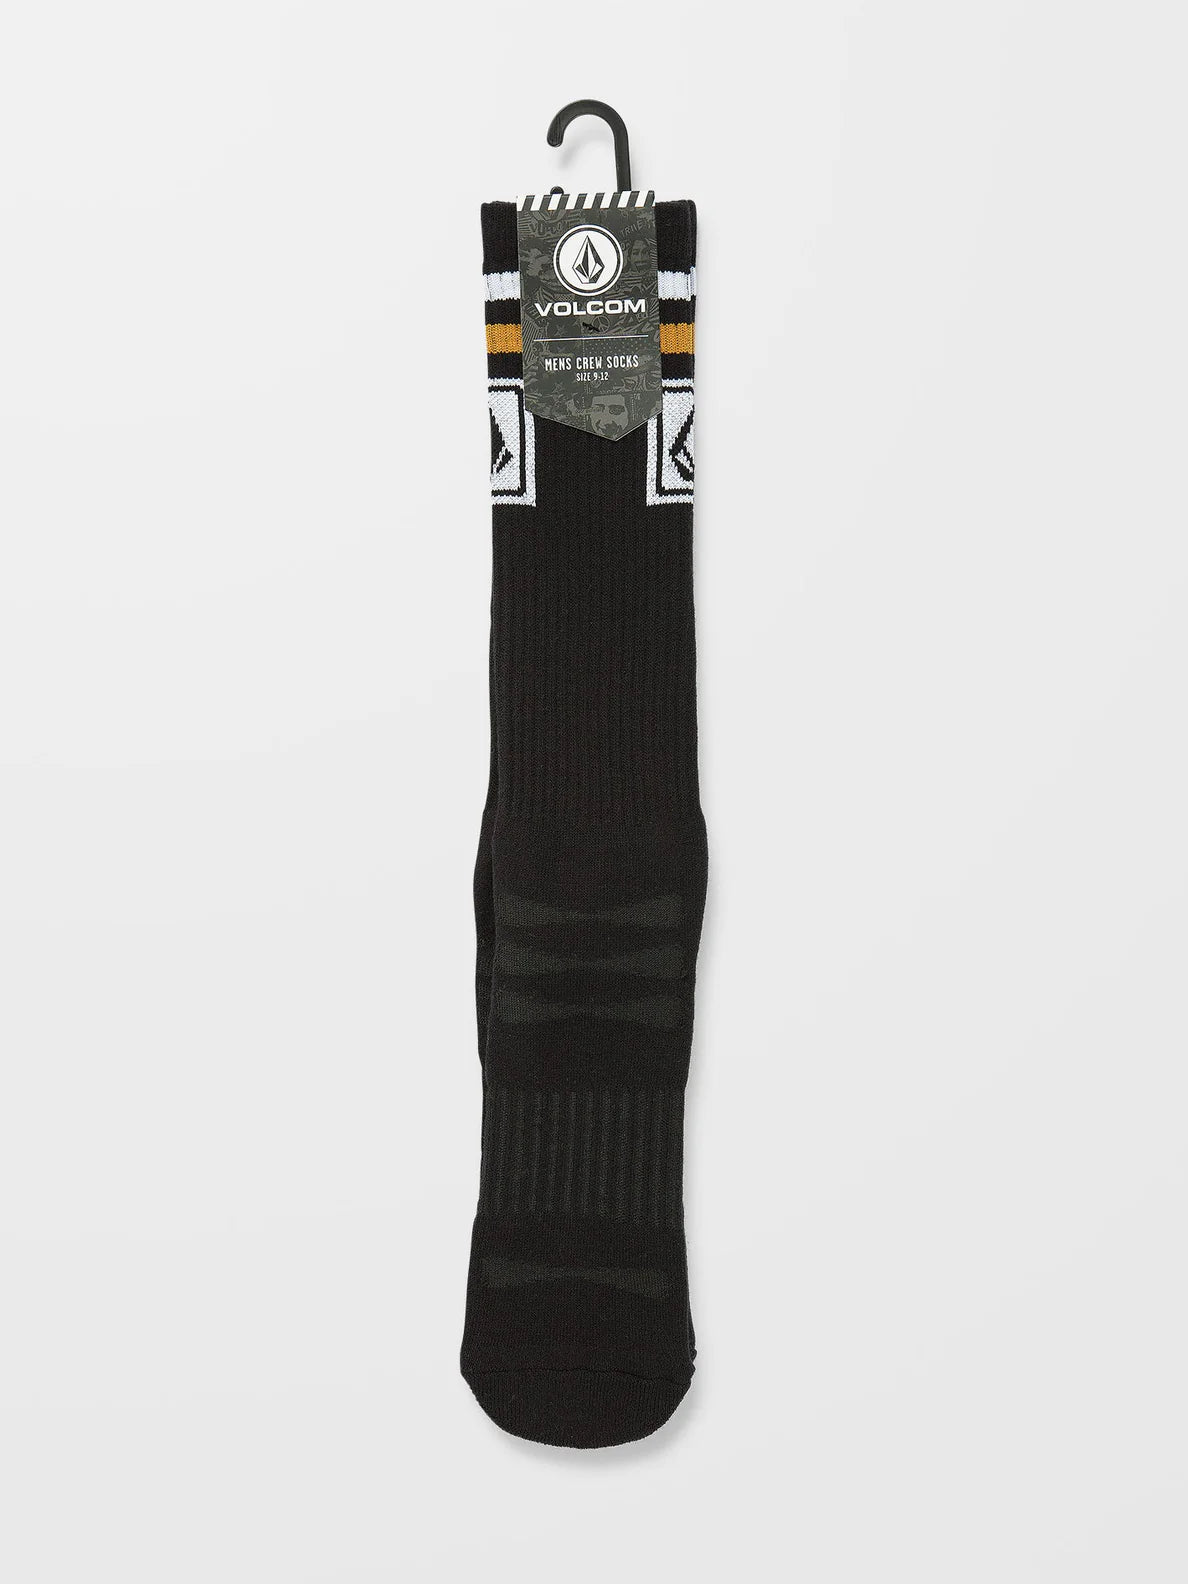 Chaussettes Volcom High Stripe Ramp Stone Skate - Noir | Boutique Volcom | Chaussettes | Collection_Zalando | Nouveaux produits | Produits les plus récents | Produits les plus vendus | surfdevils.com